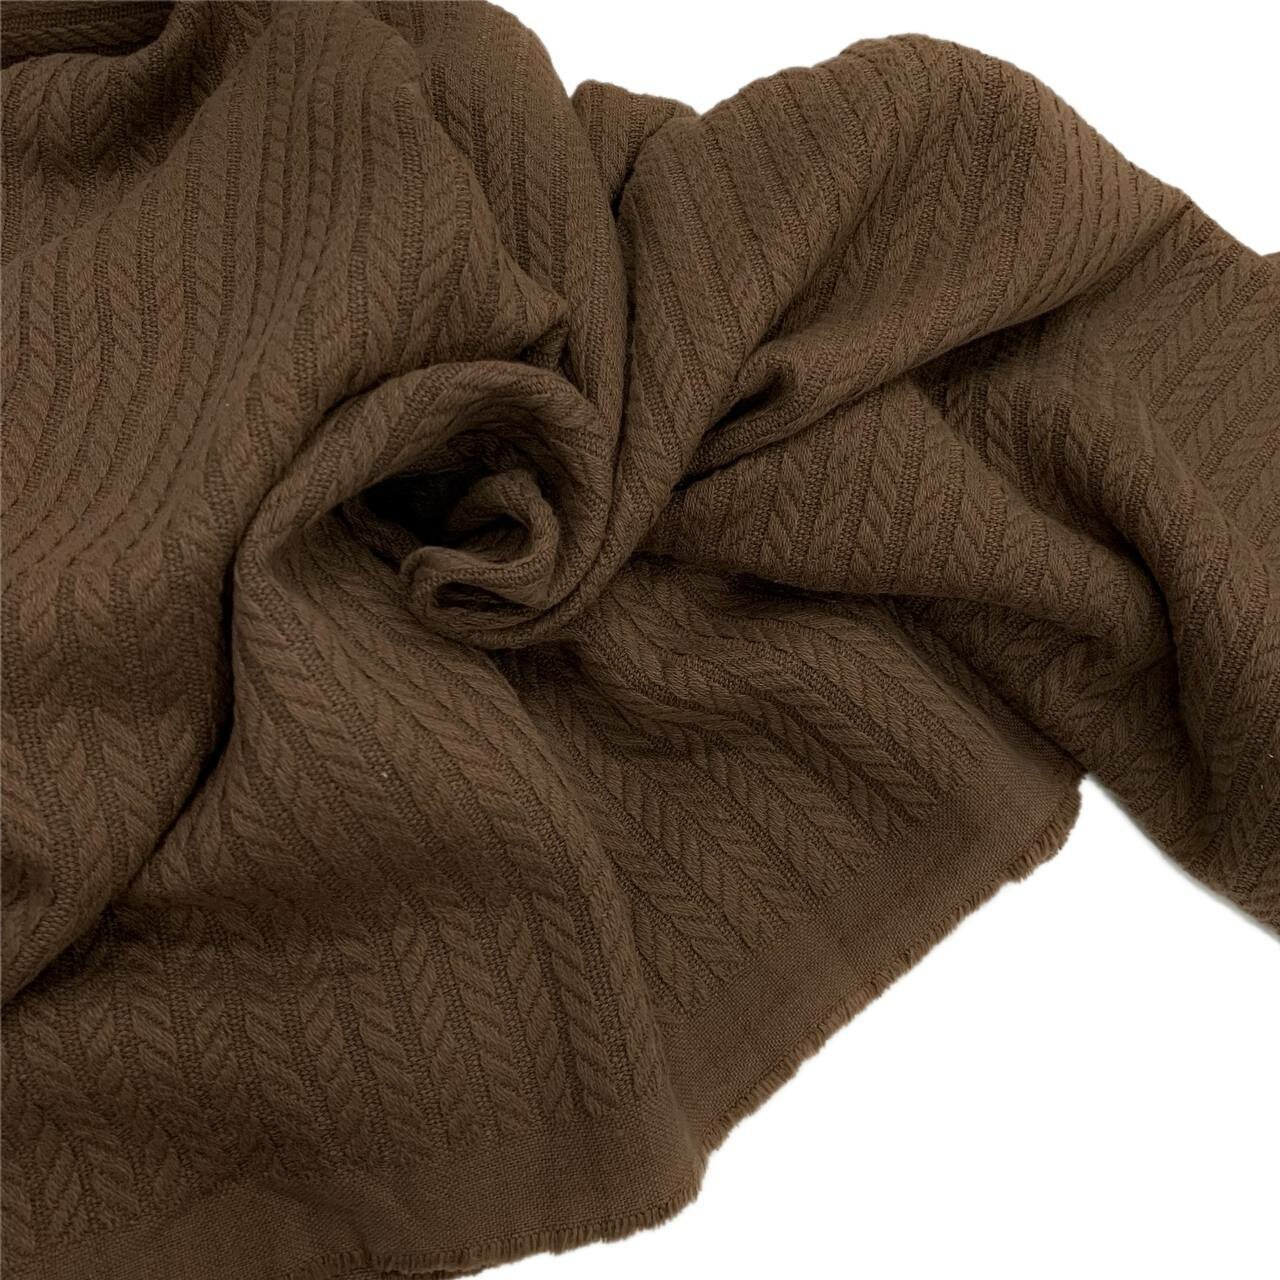 Ткань -Хлопковое полотно, коса, ёлочка, цвет шоколад, широкое,240 см, для покрывала, пледа рукоделия и творчества, 0,5 метра